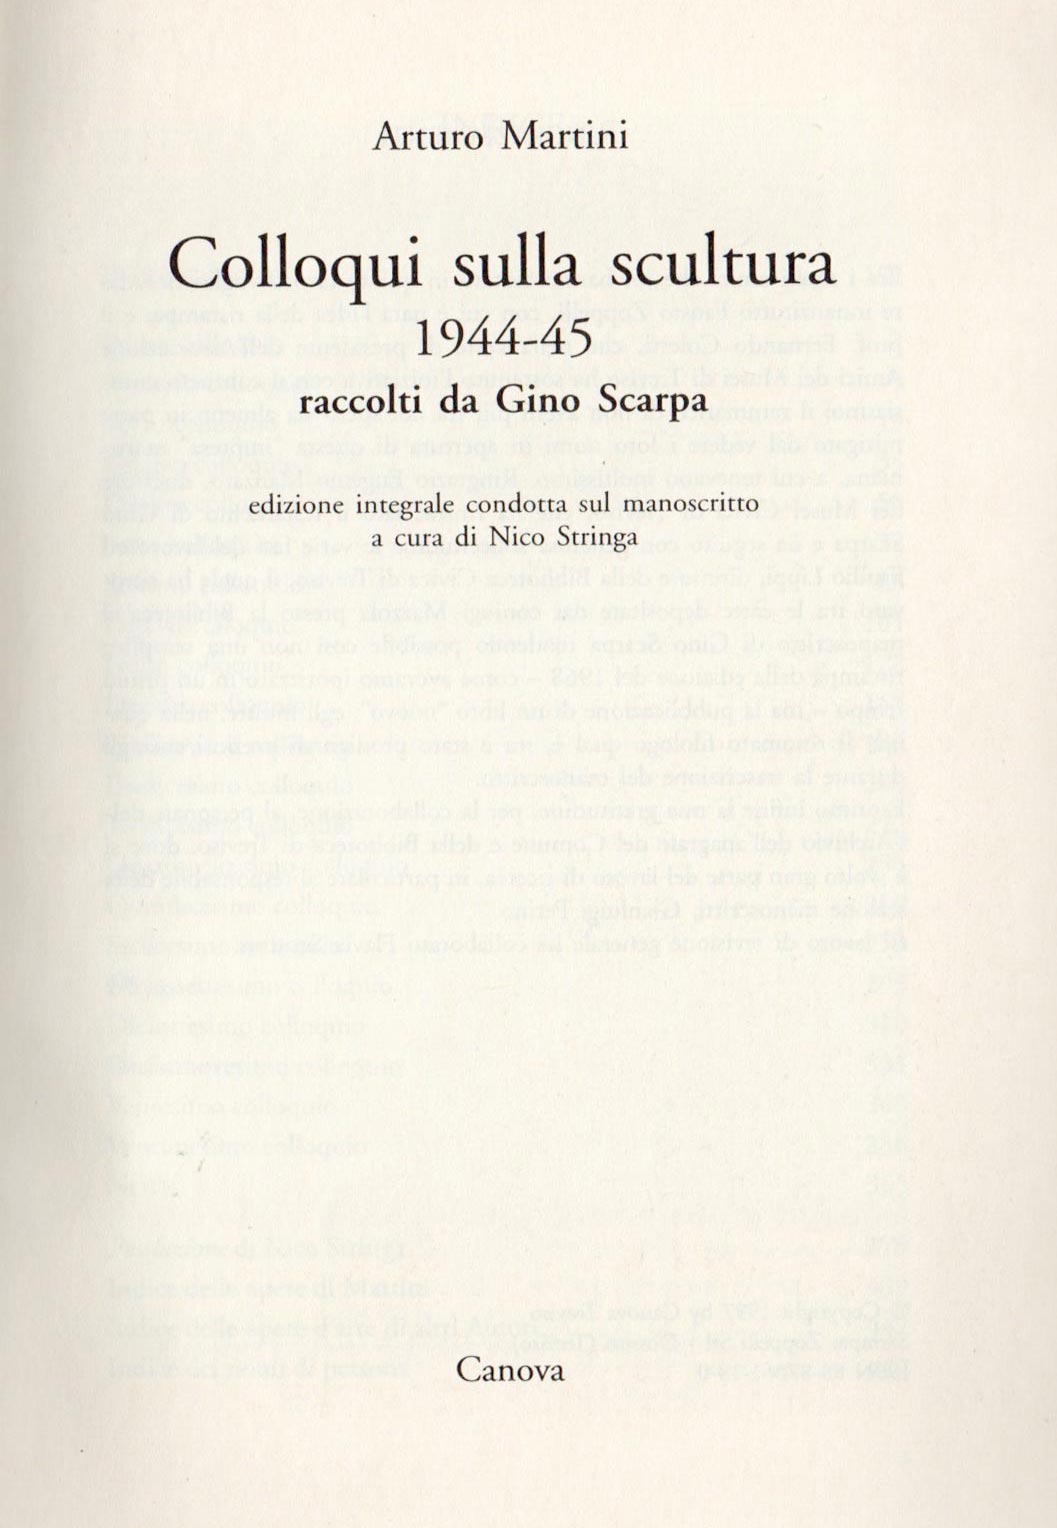 Arturo Martini - Colloqui sulla scultura, raccolti da Gino Scarpa